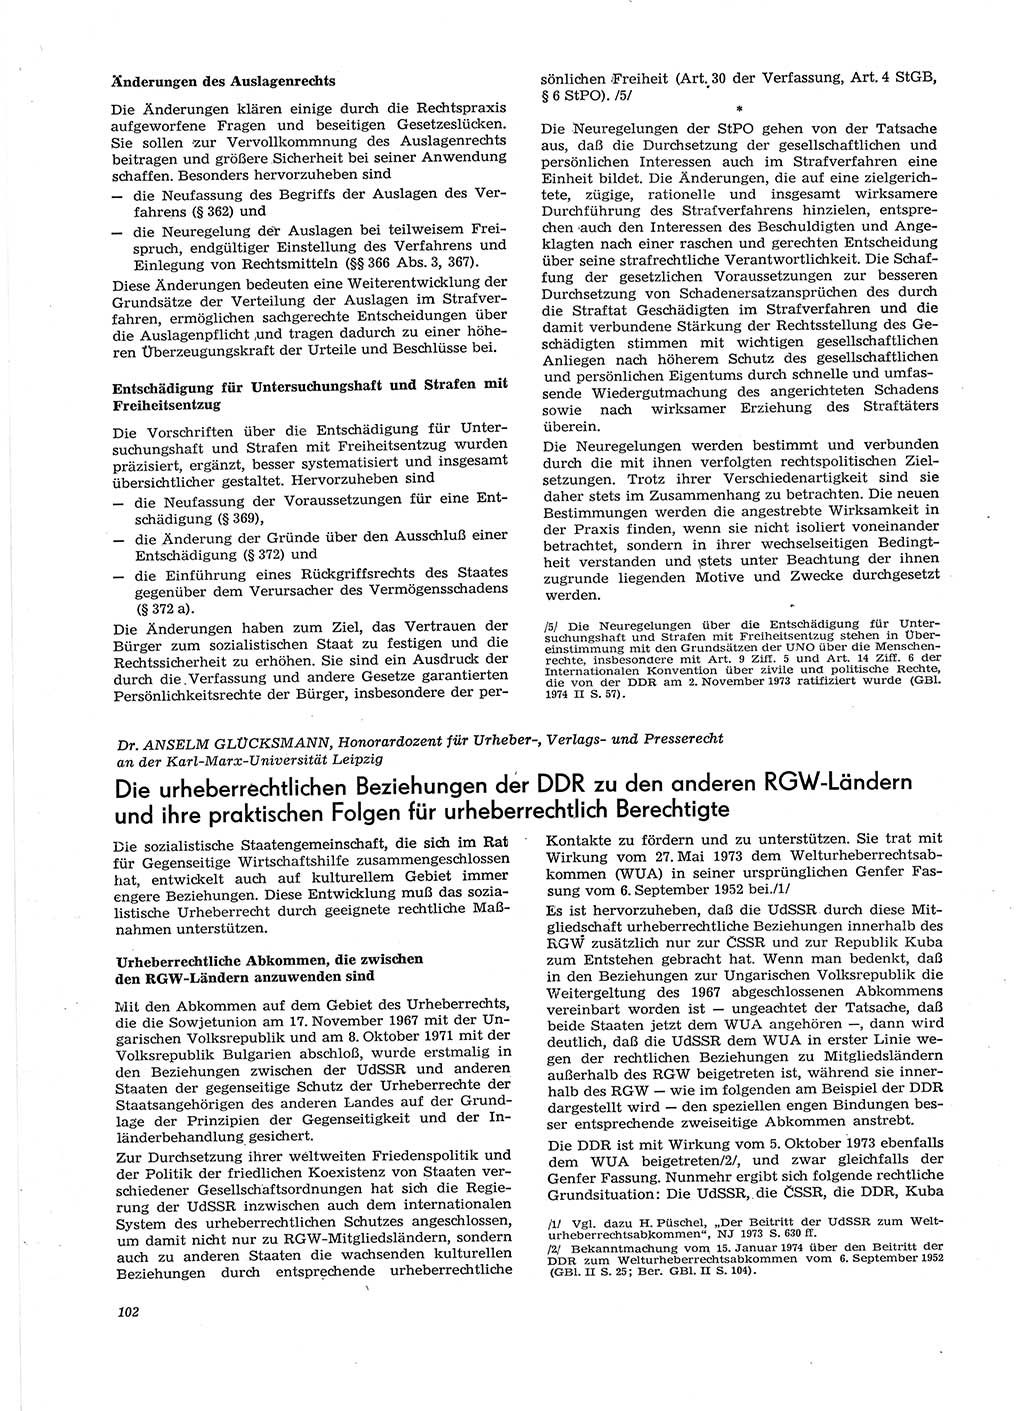 Neue Justiz (NJ), Zeitschrift für Recht und Rechtswissenschaft [Deutsche Demokratische Republik (DDR)], 29. Jahrgang 1975, Seite 102 (NJ DDR 1975, S. 102)